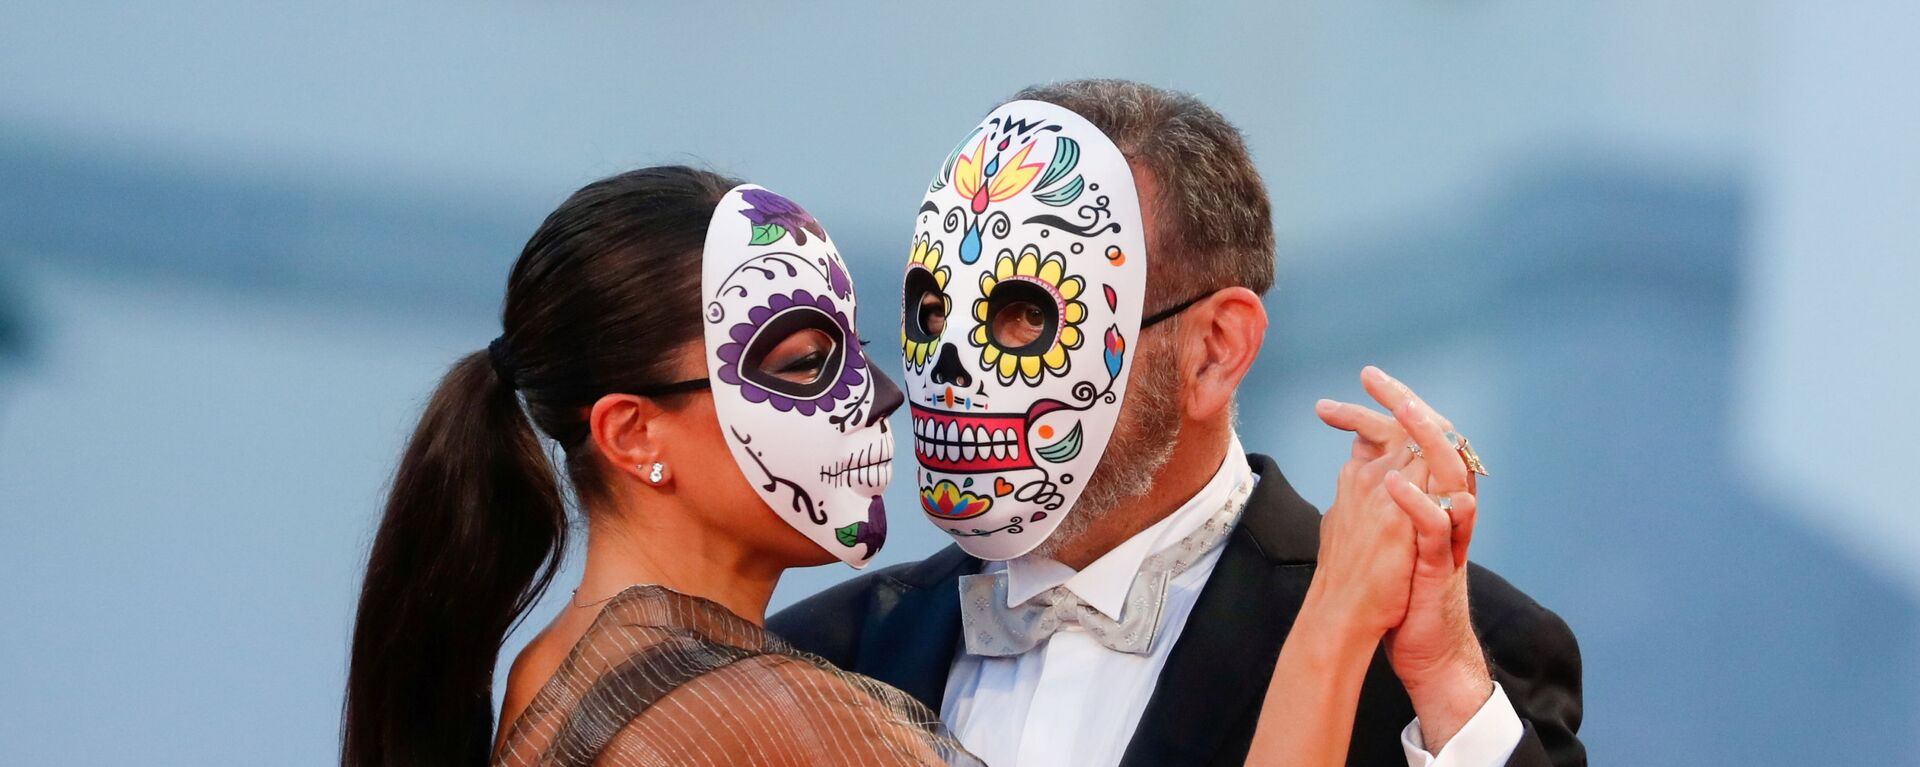 Актер Эрнан Мендоса с партнершей в масках на 78-м Венецианском международном кинофестивале - Sputnik Молдова, 1920, 07.09.2021